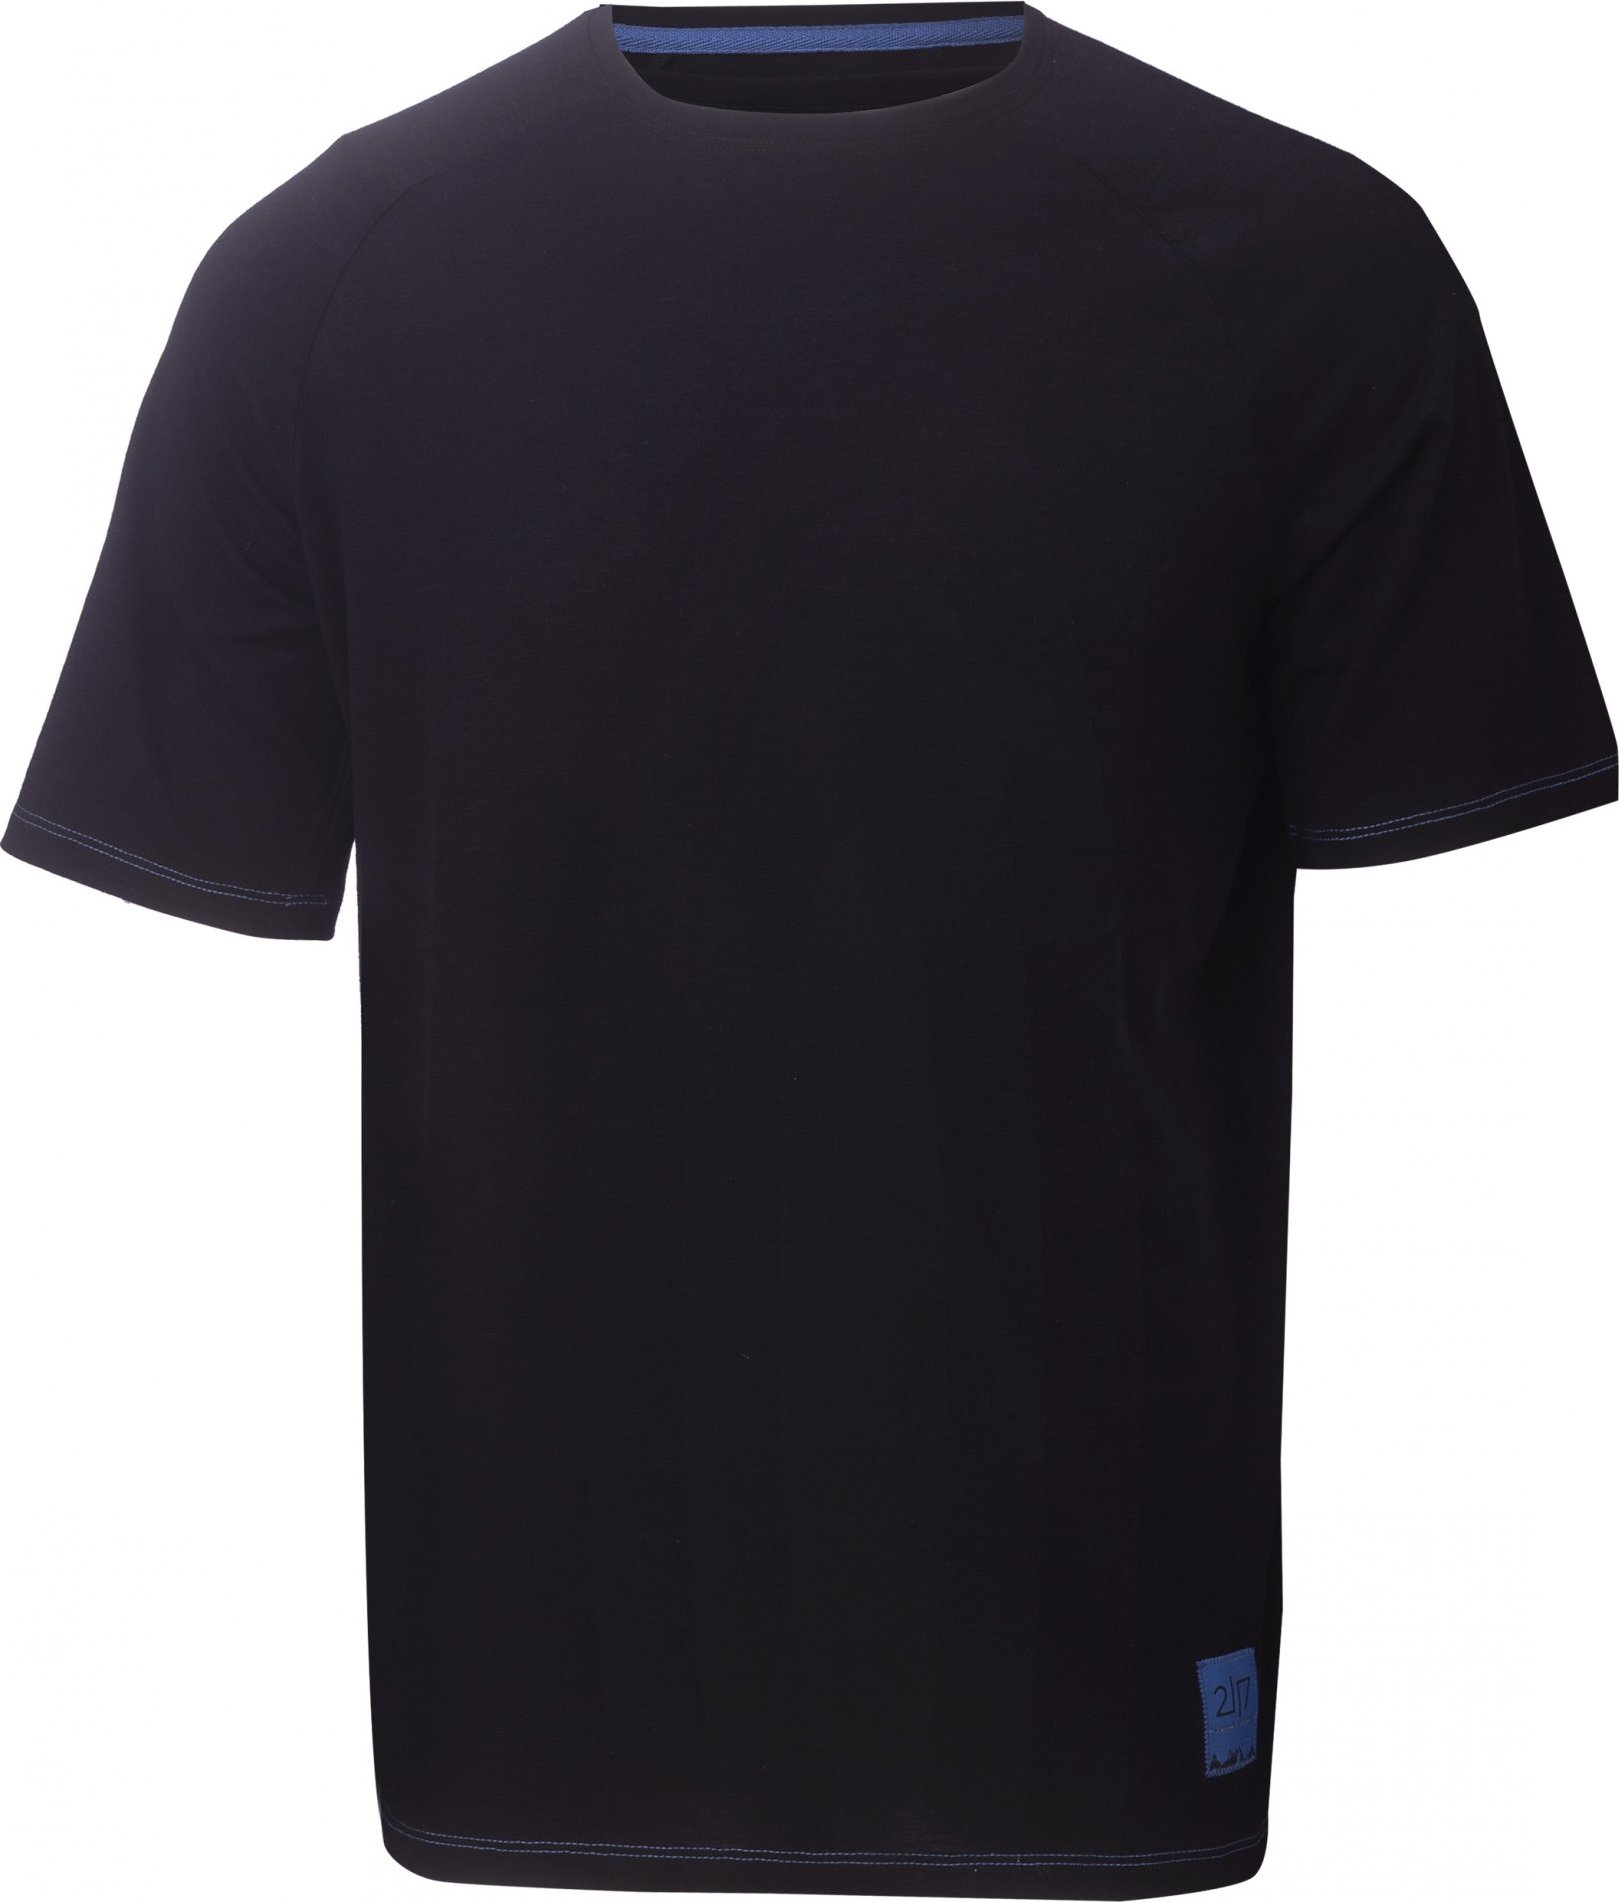 Pánské funkční triko s krátkým rukávem 2117 Linghem černé Velikost: S